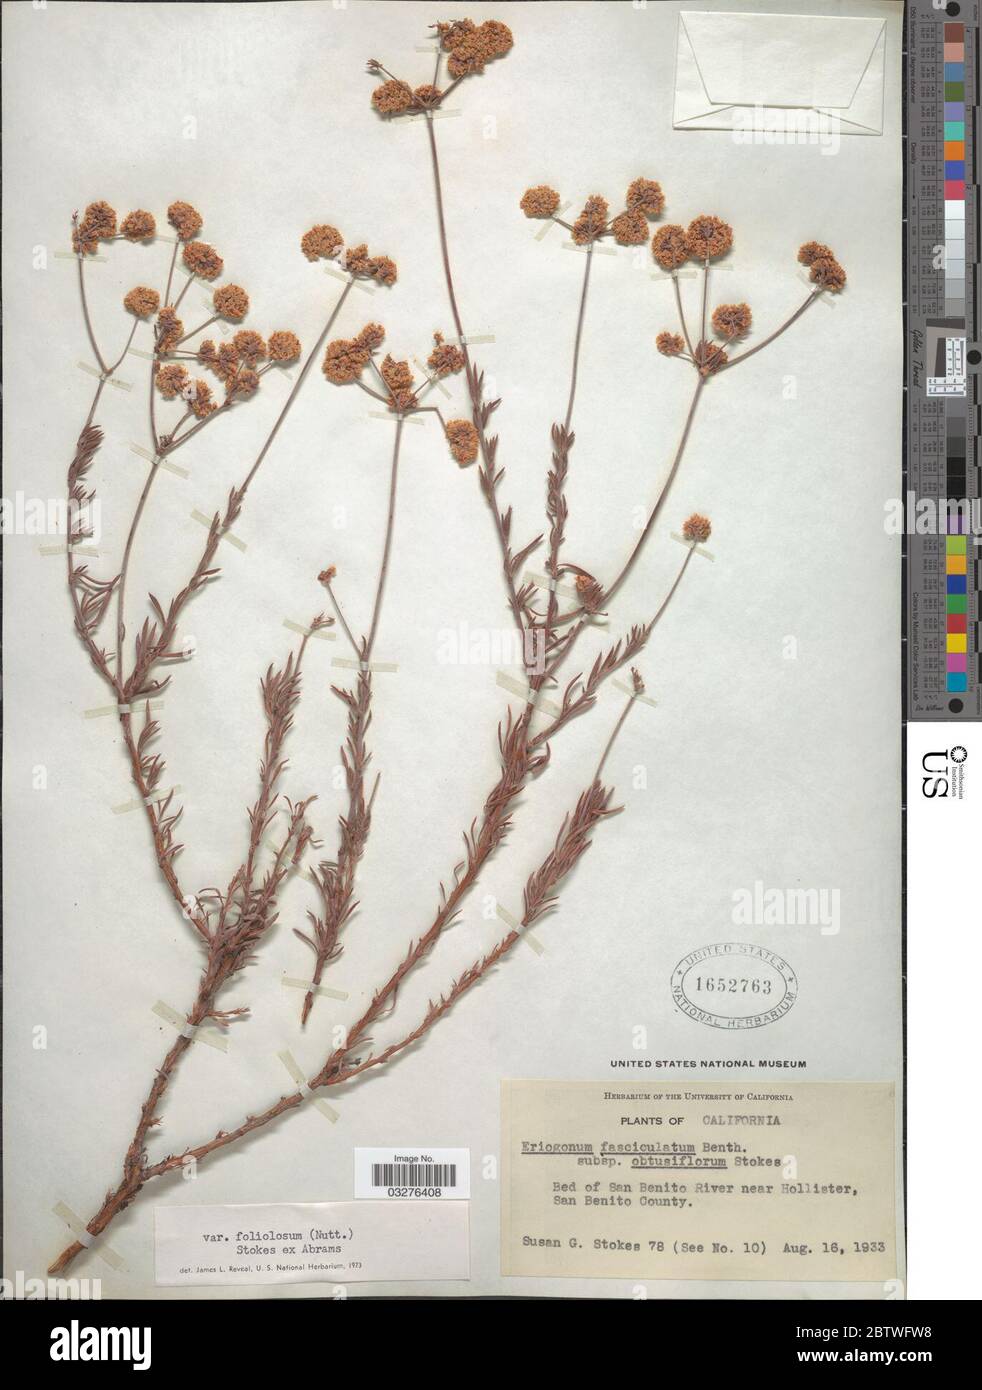 Eriogonum fasciculatum var foliolosum Benth. Stock Photo